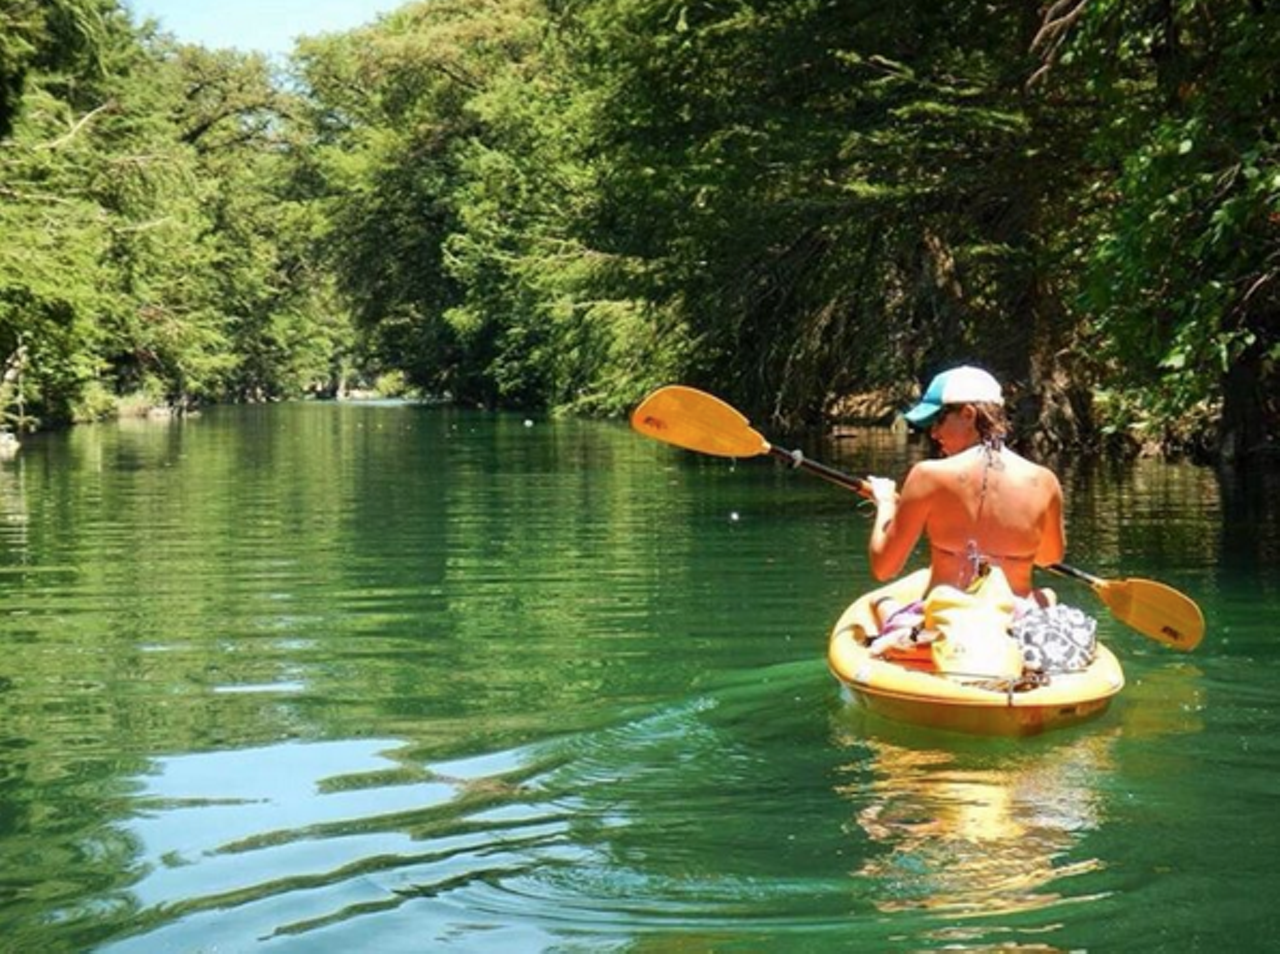 Medina River
Get your swimming/kayaking/splashing on an hour away at the Medina River.
Photo via Instagram/piratekelli